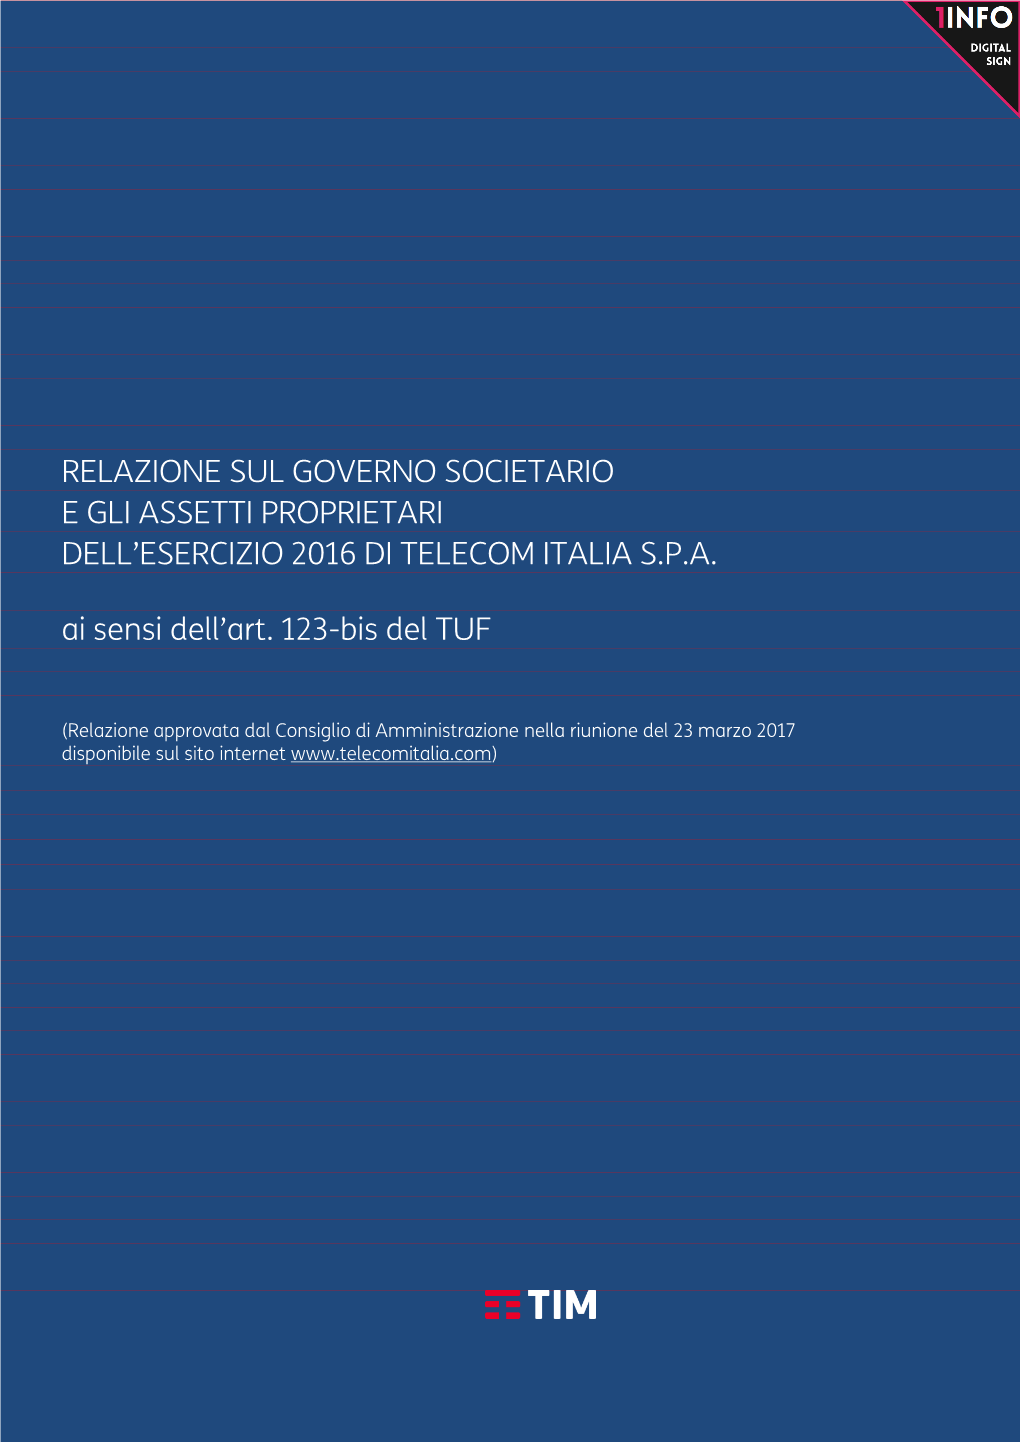 Relazione Sul Governo Societario E Gli Assetti Proprietari Dell’Esercizio 2016 Di Telecom Italia S.P.A